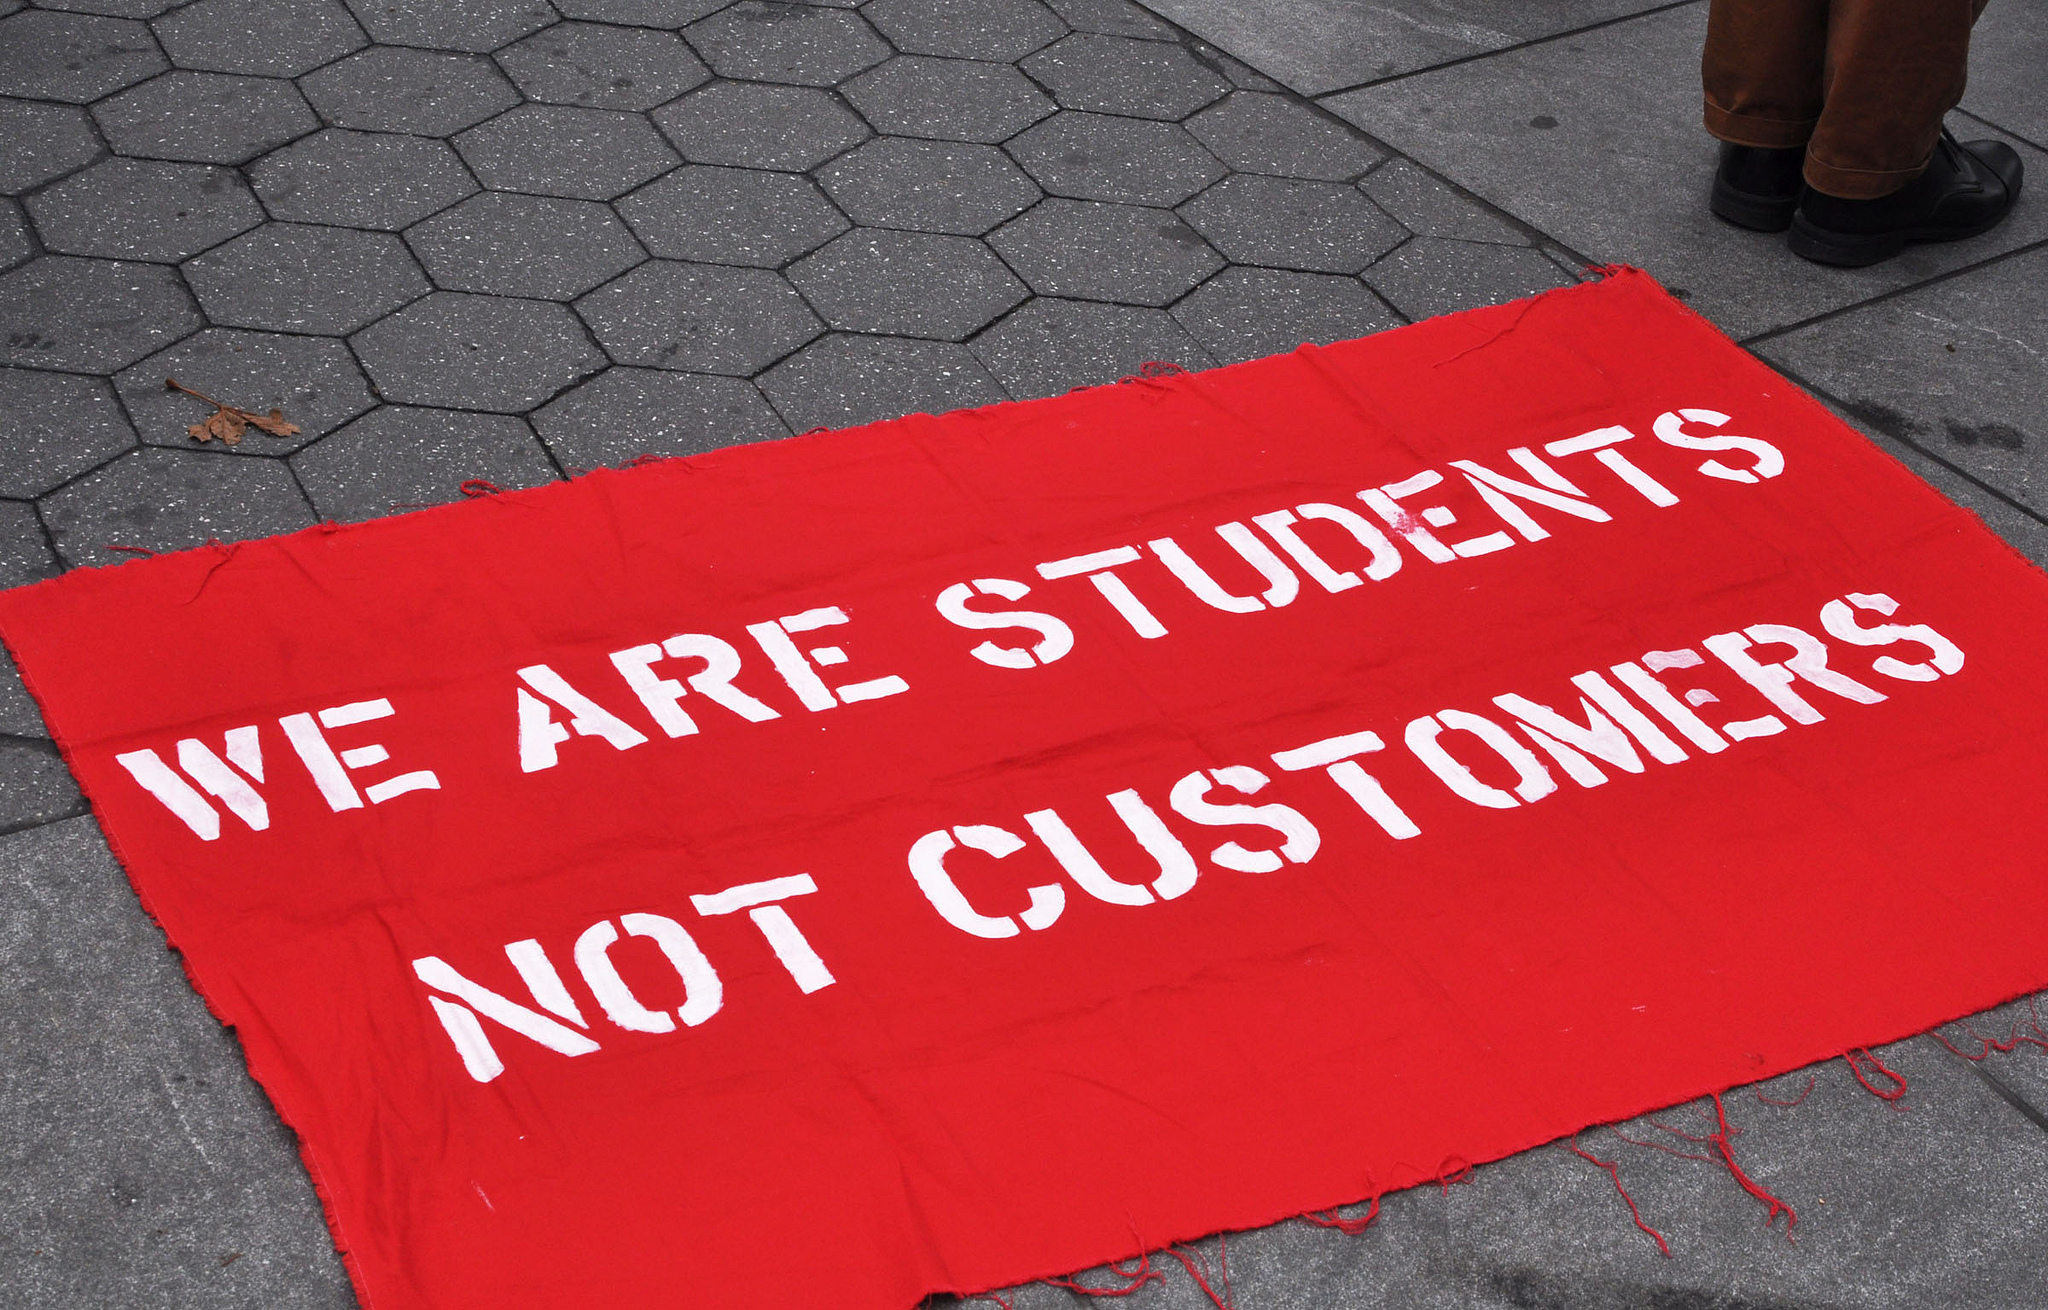 Student debt strike sign